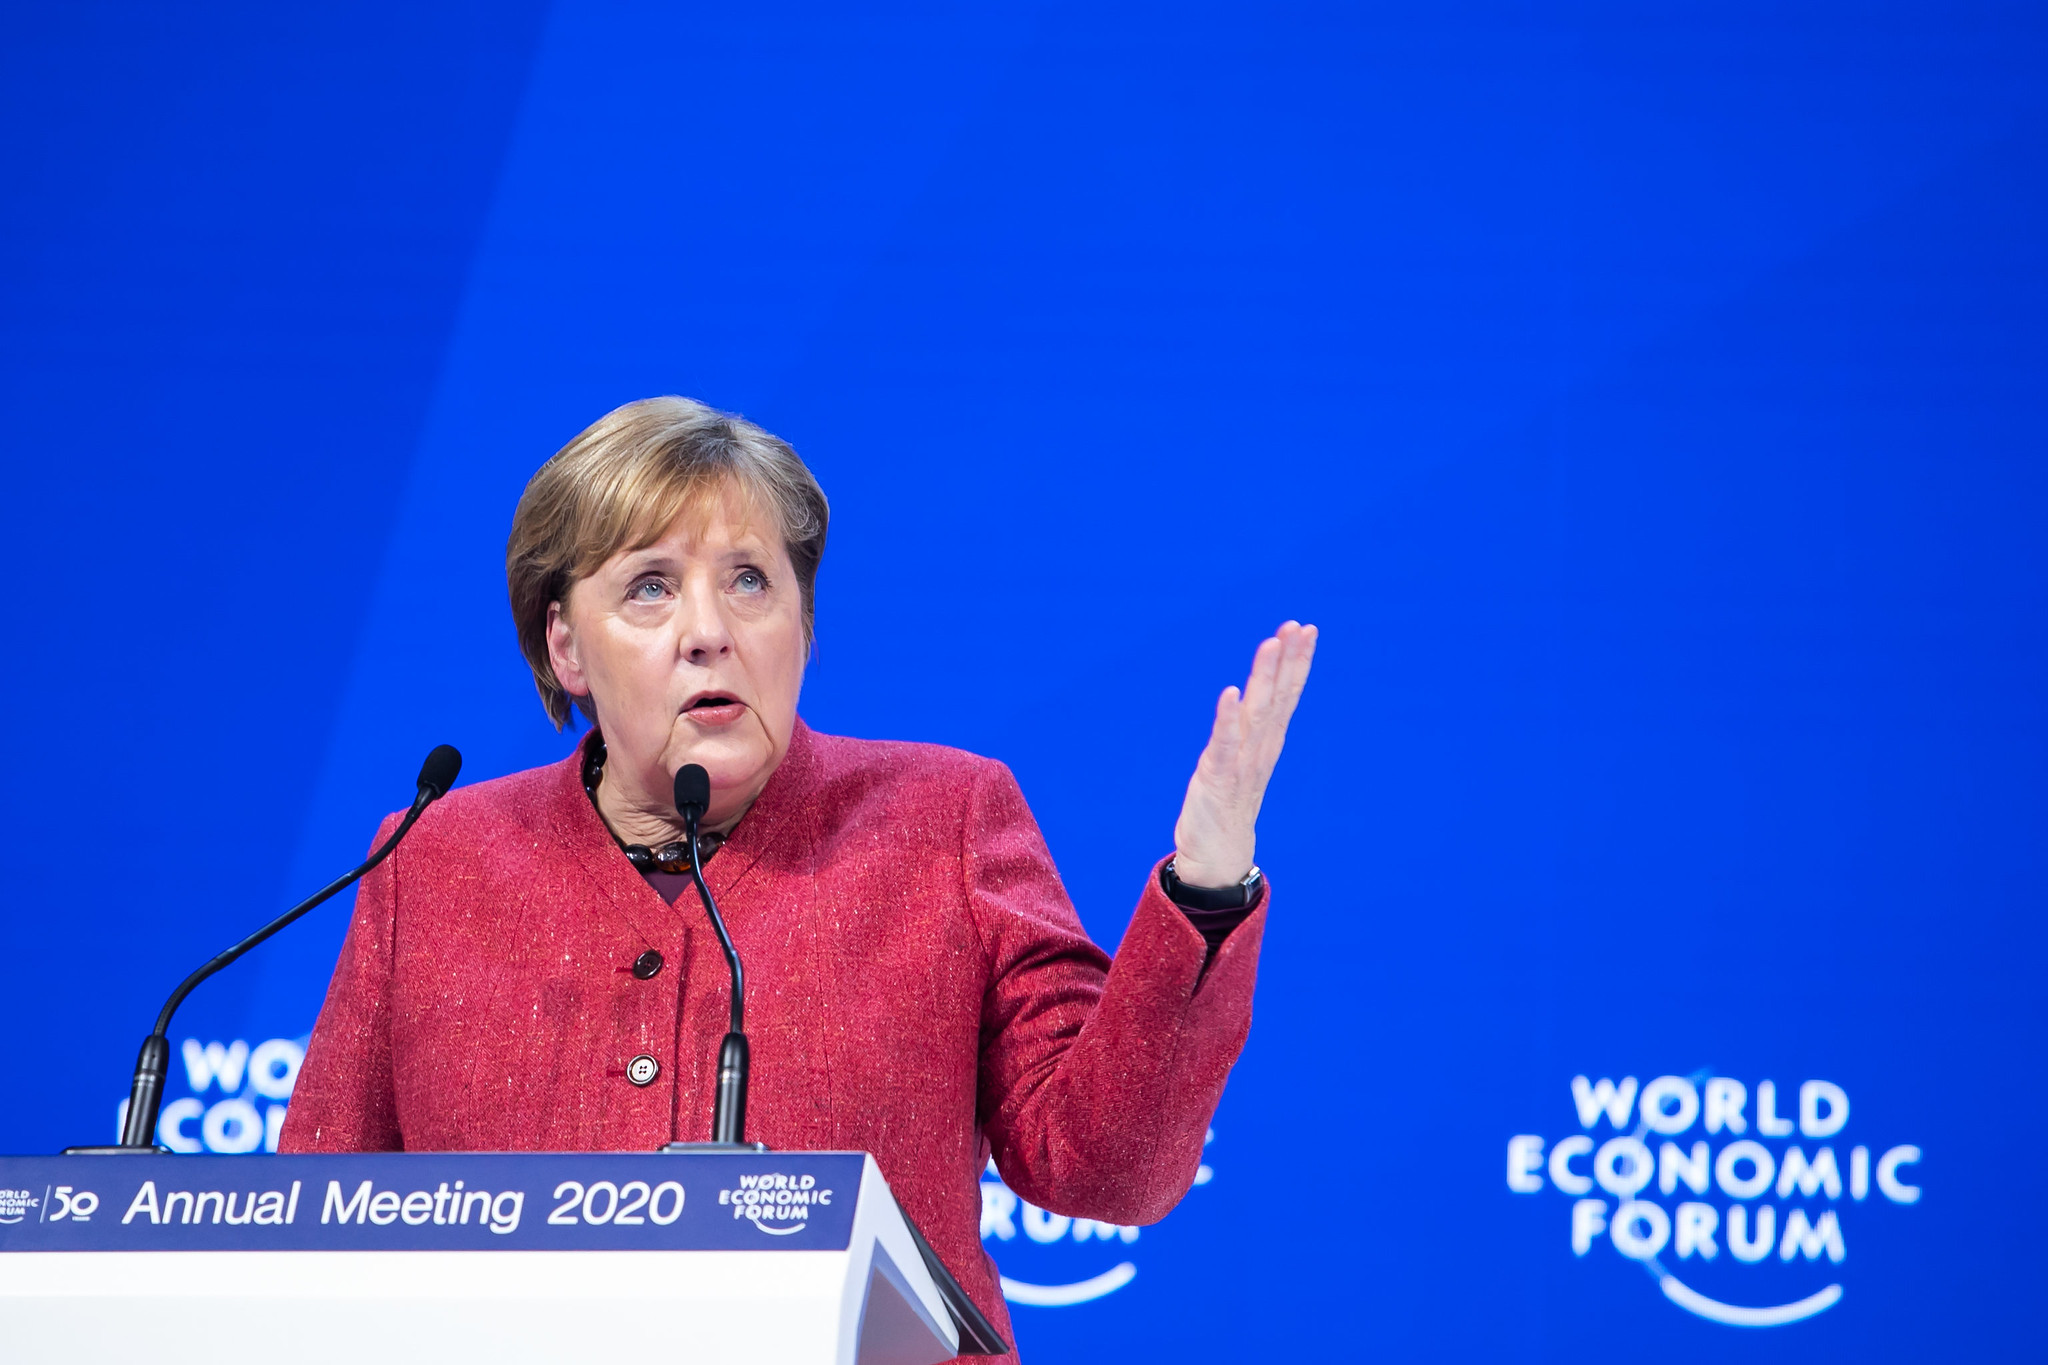 Após eleição, sucessor de Merkel ainda está indefinido